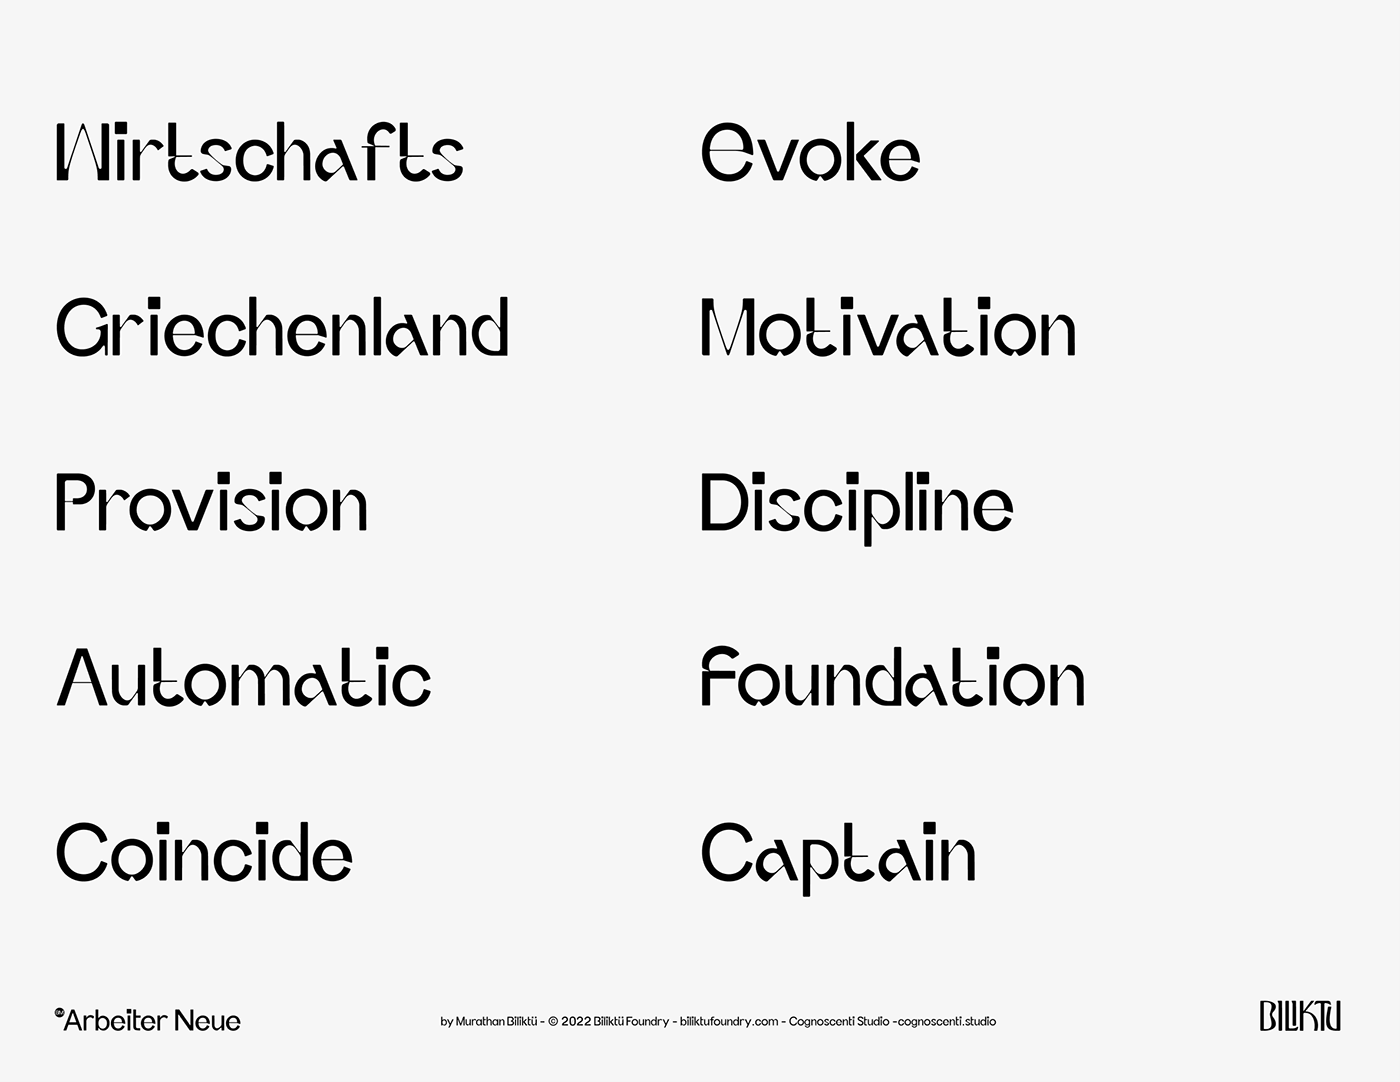 brand brand identity font identity Logo Design Logotype text Typeface typography   visual identity